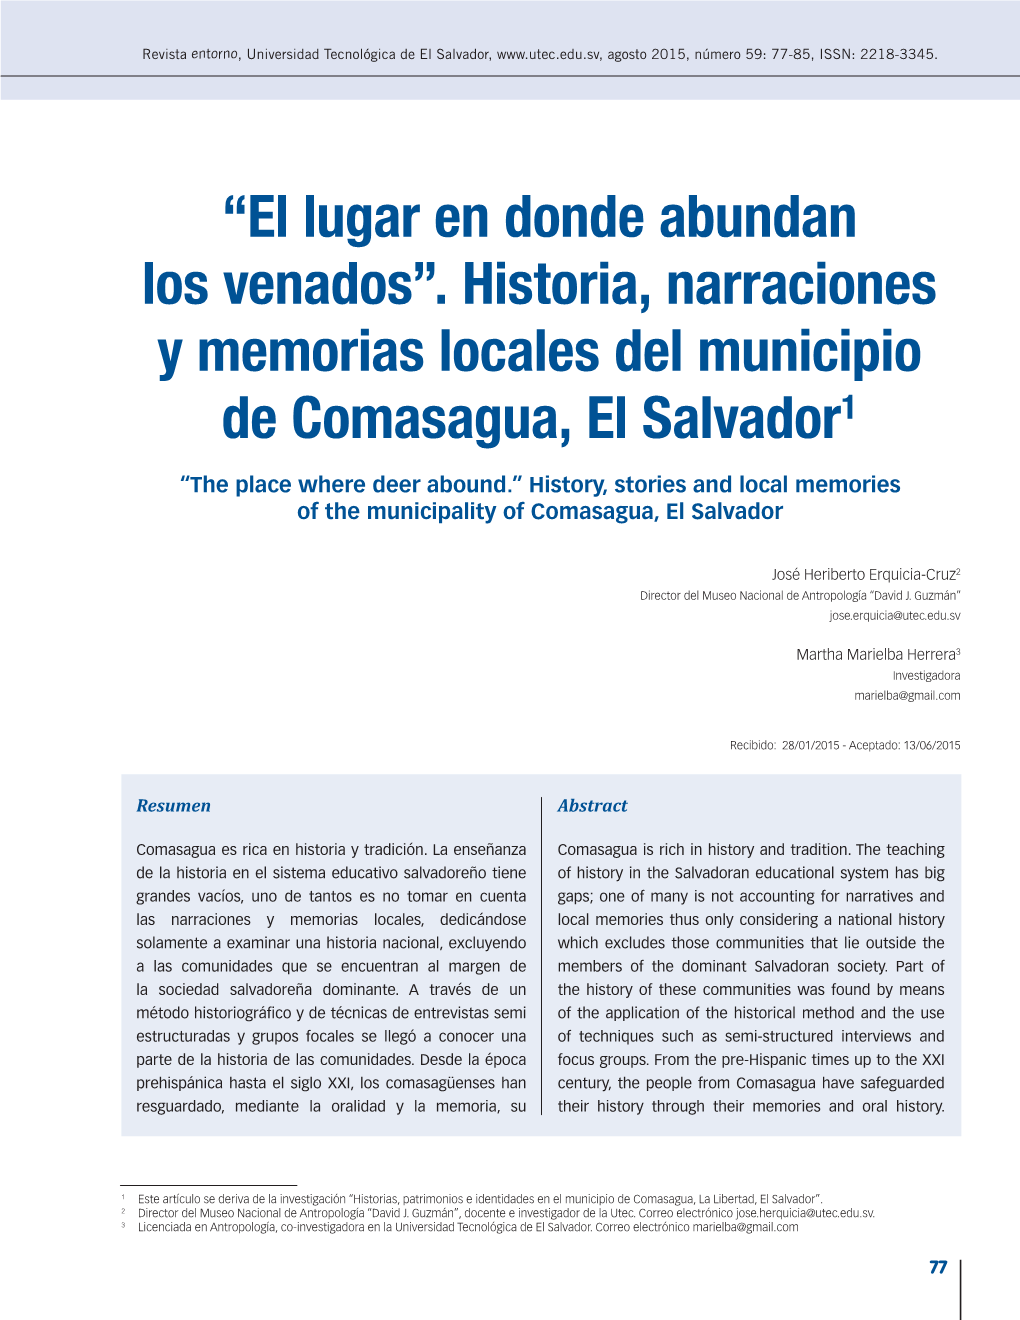 Historia, Narraciones Y Memorias Locales Del Municipio De Comasagua, El Salvador1